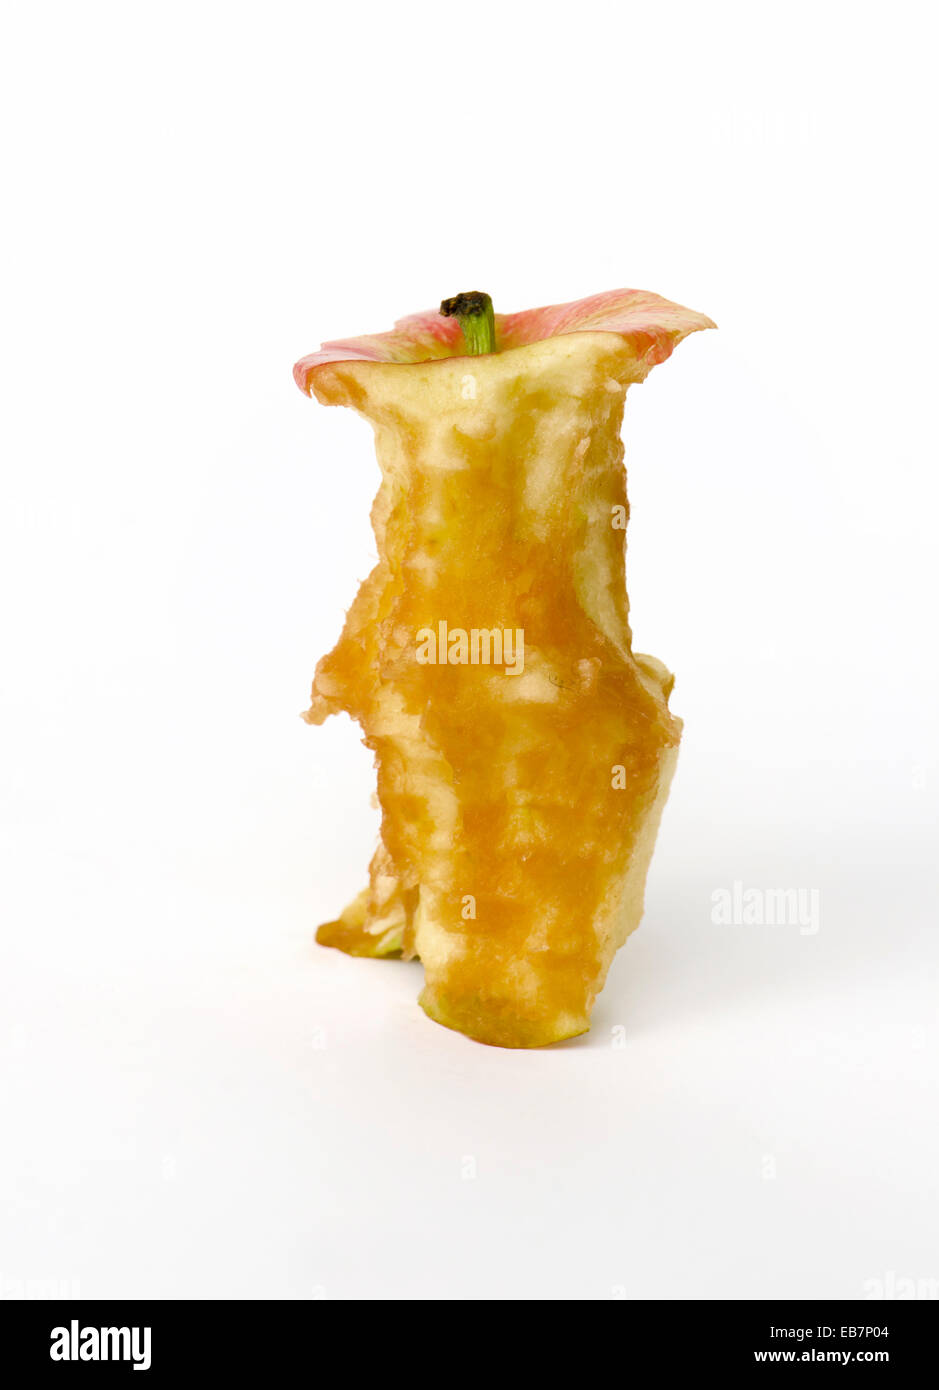 Mangiato apple core è diventato marrone, ossidazione, frutta. Foto Stock